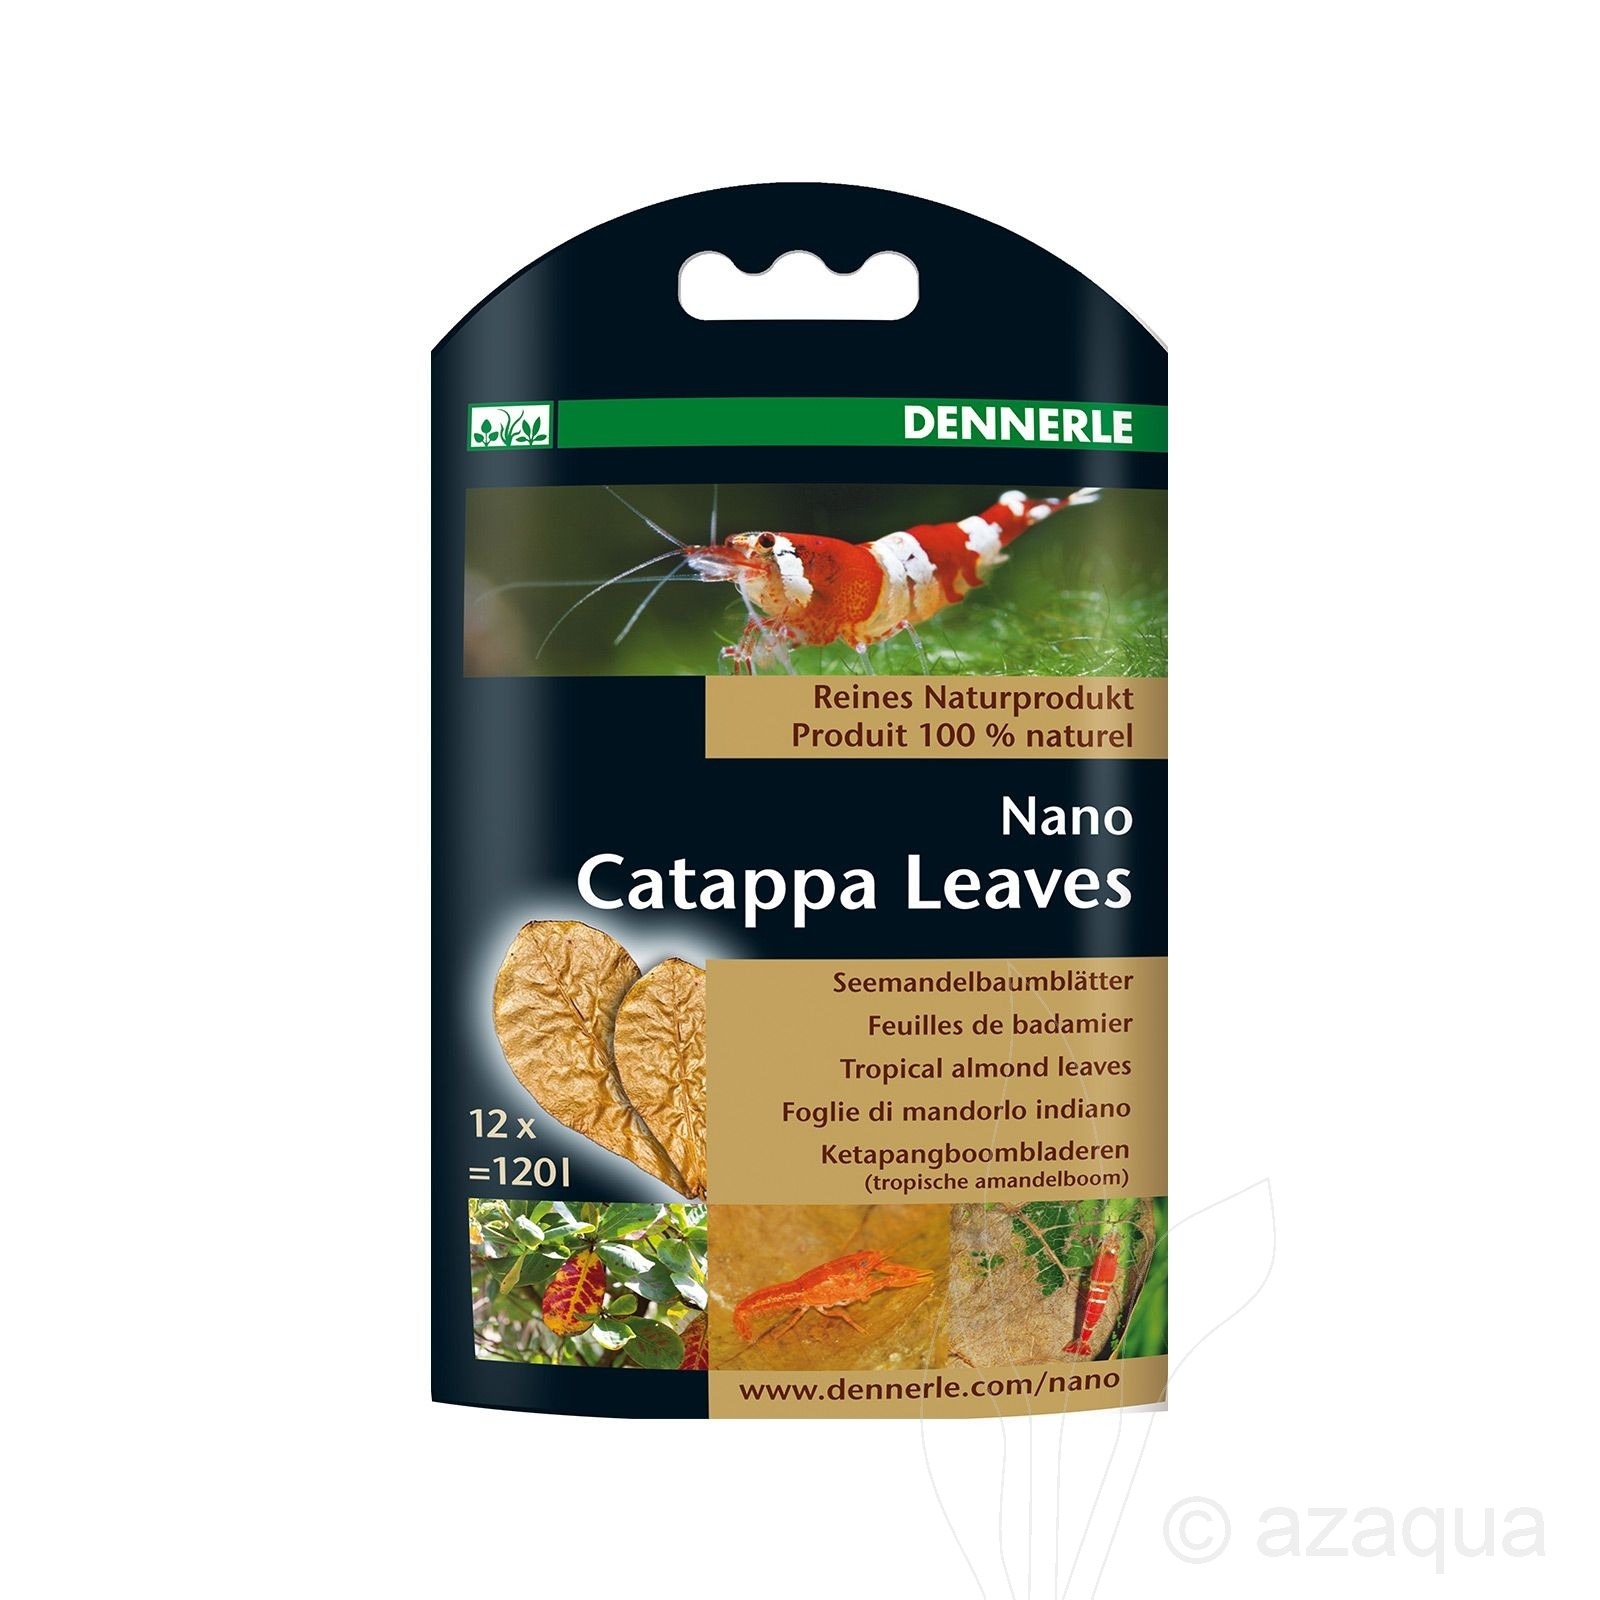 Dennerle Catappa Leaves Nano